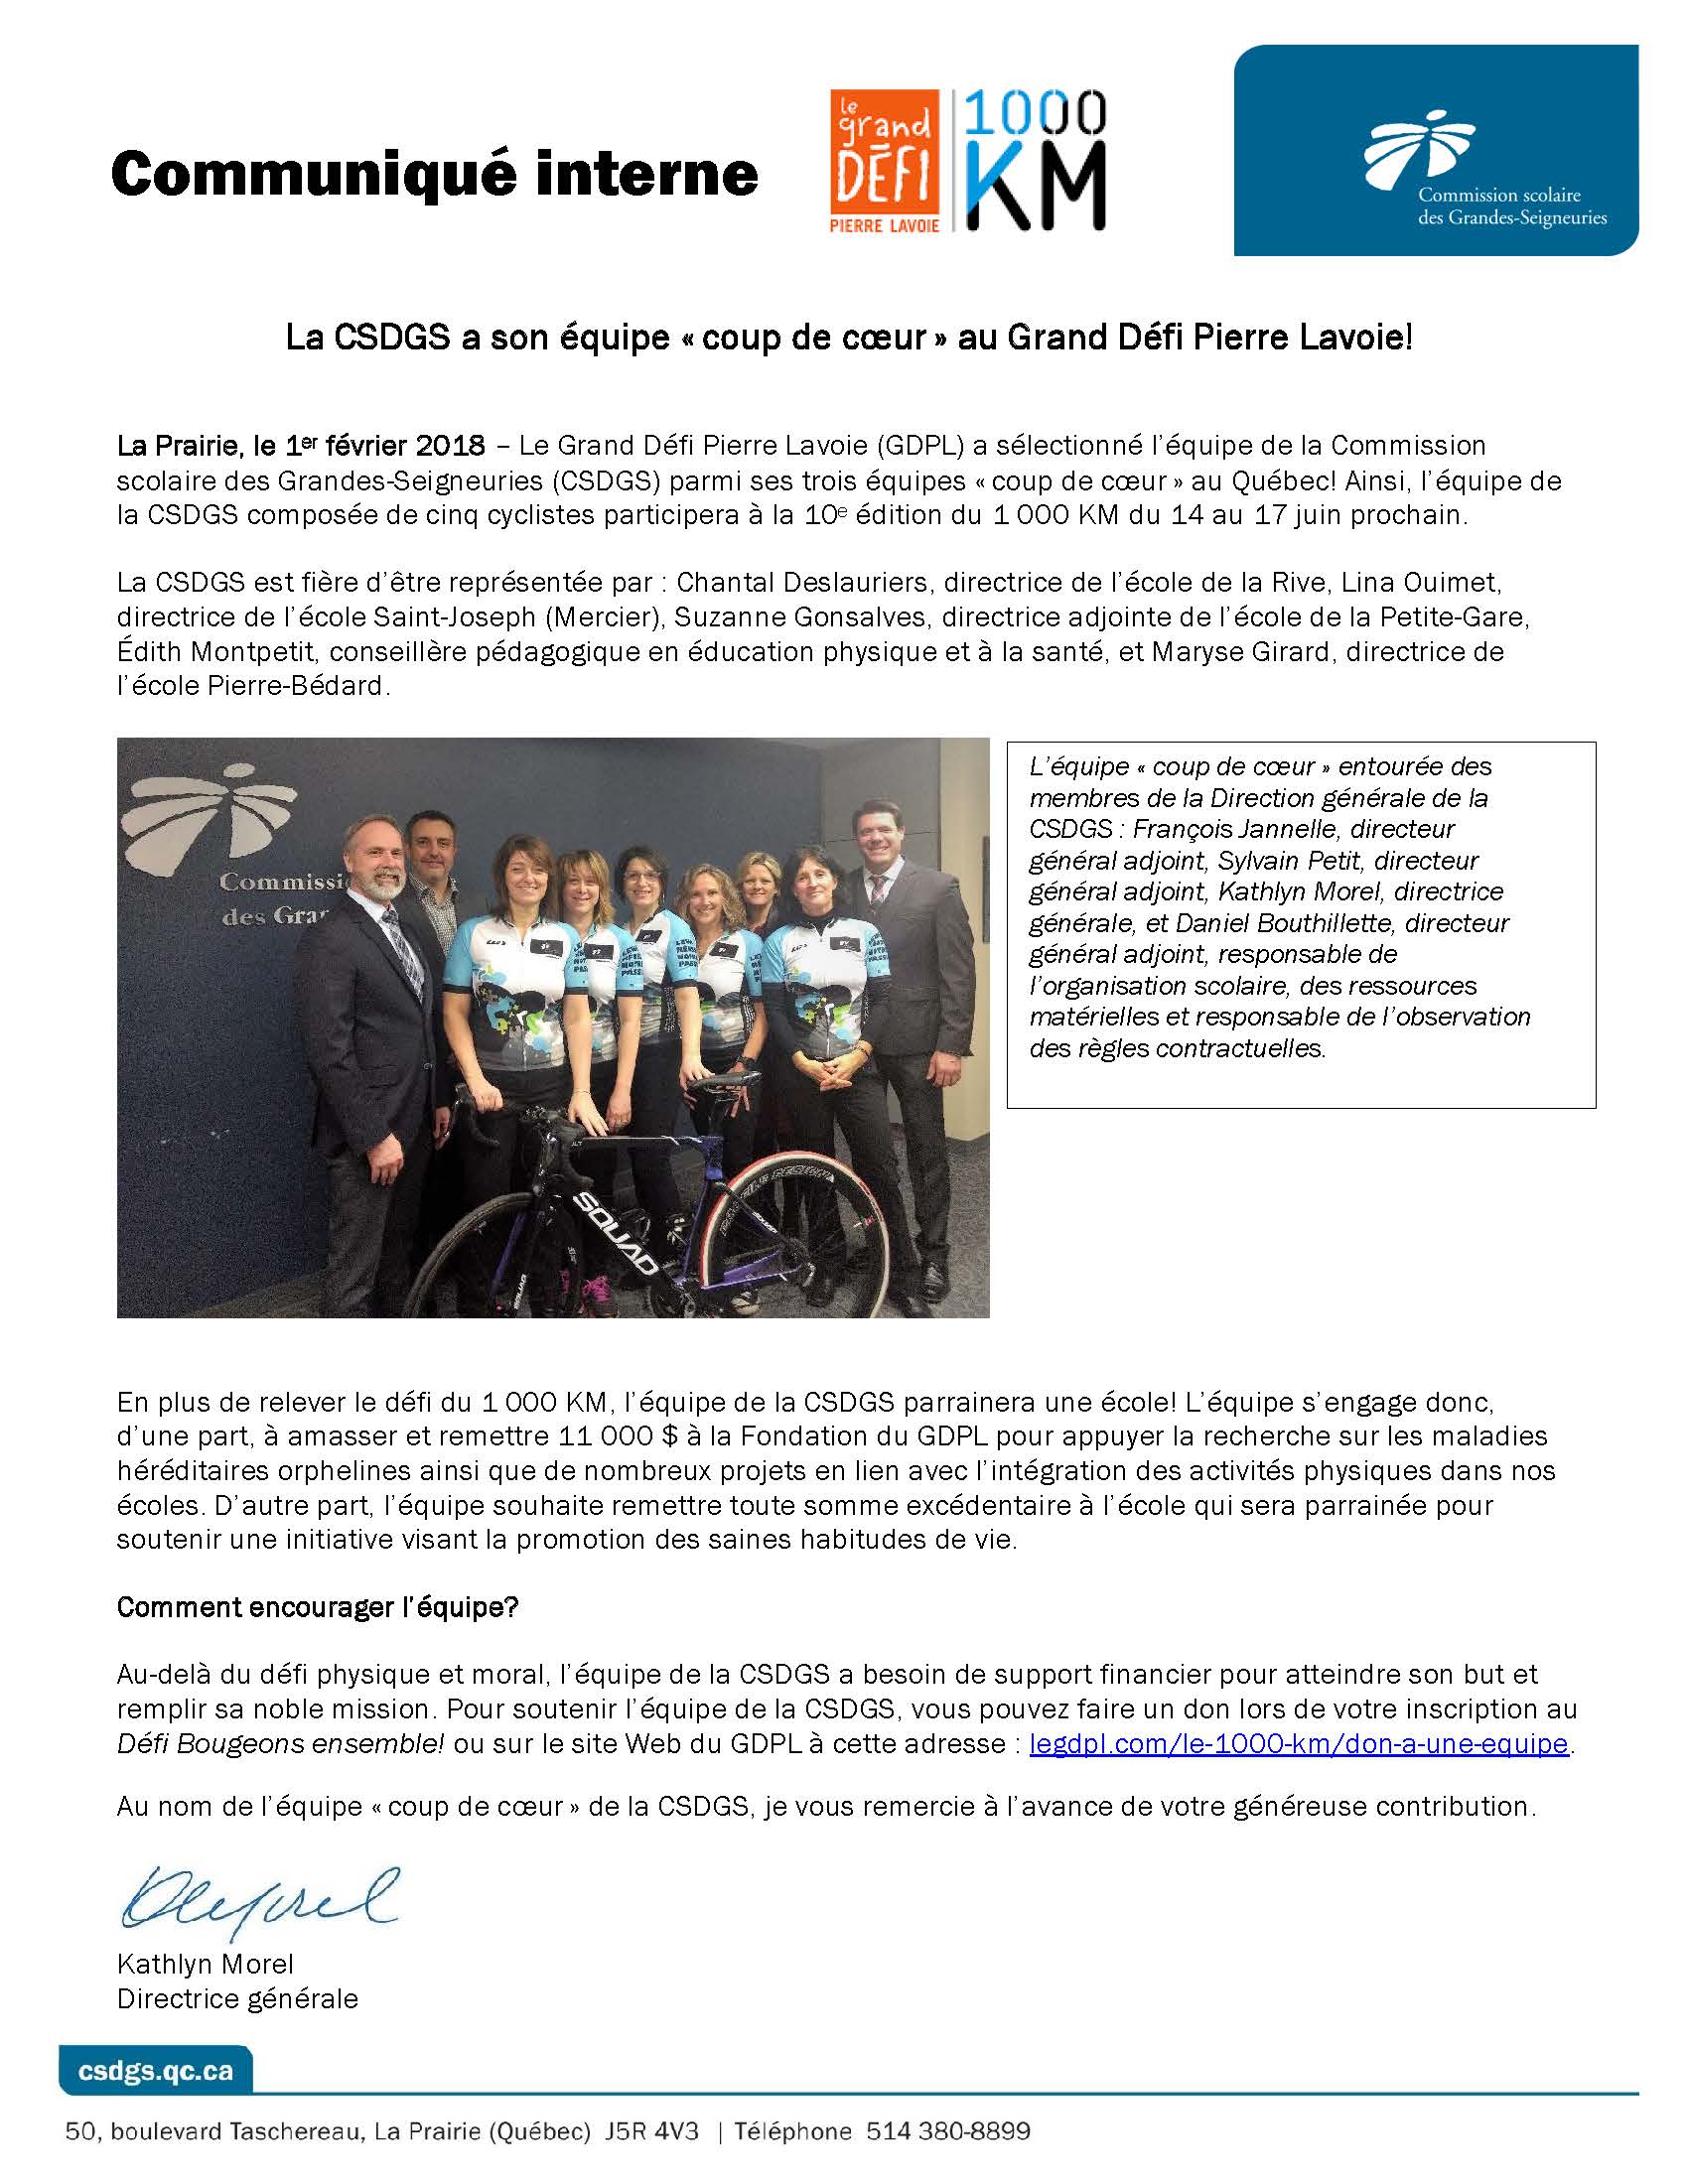 CSDGS - Communiqué interne_Équipe de la CSDGS au 1000km_GDPL - 2017-2018